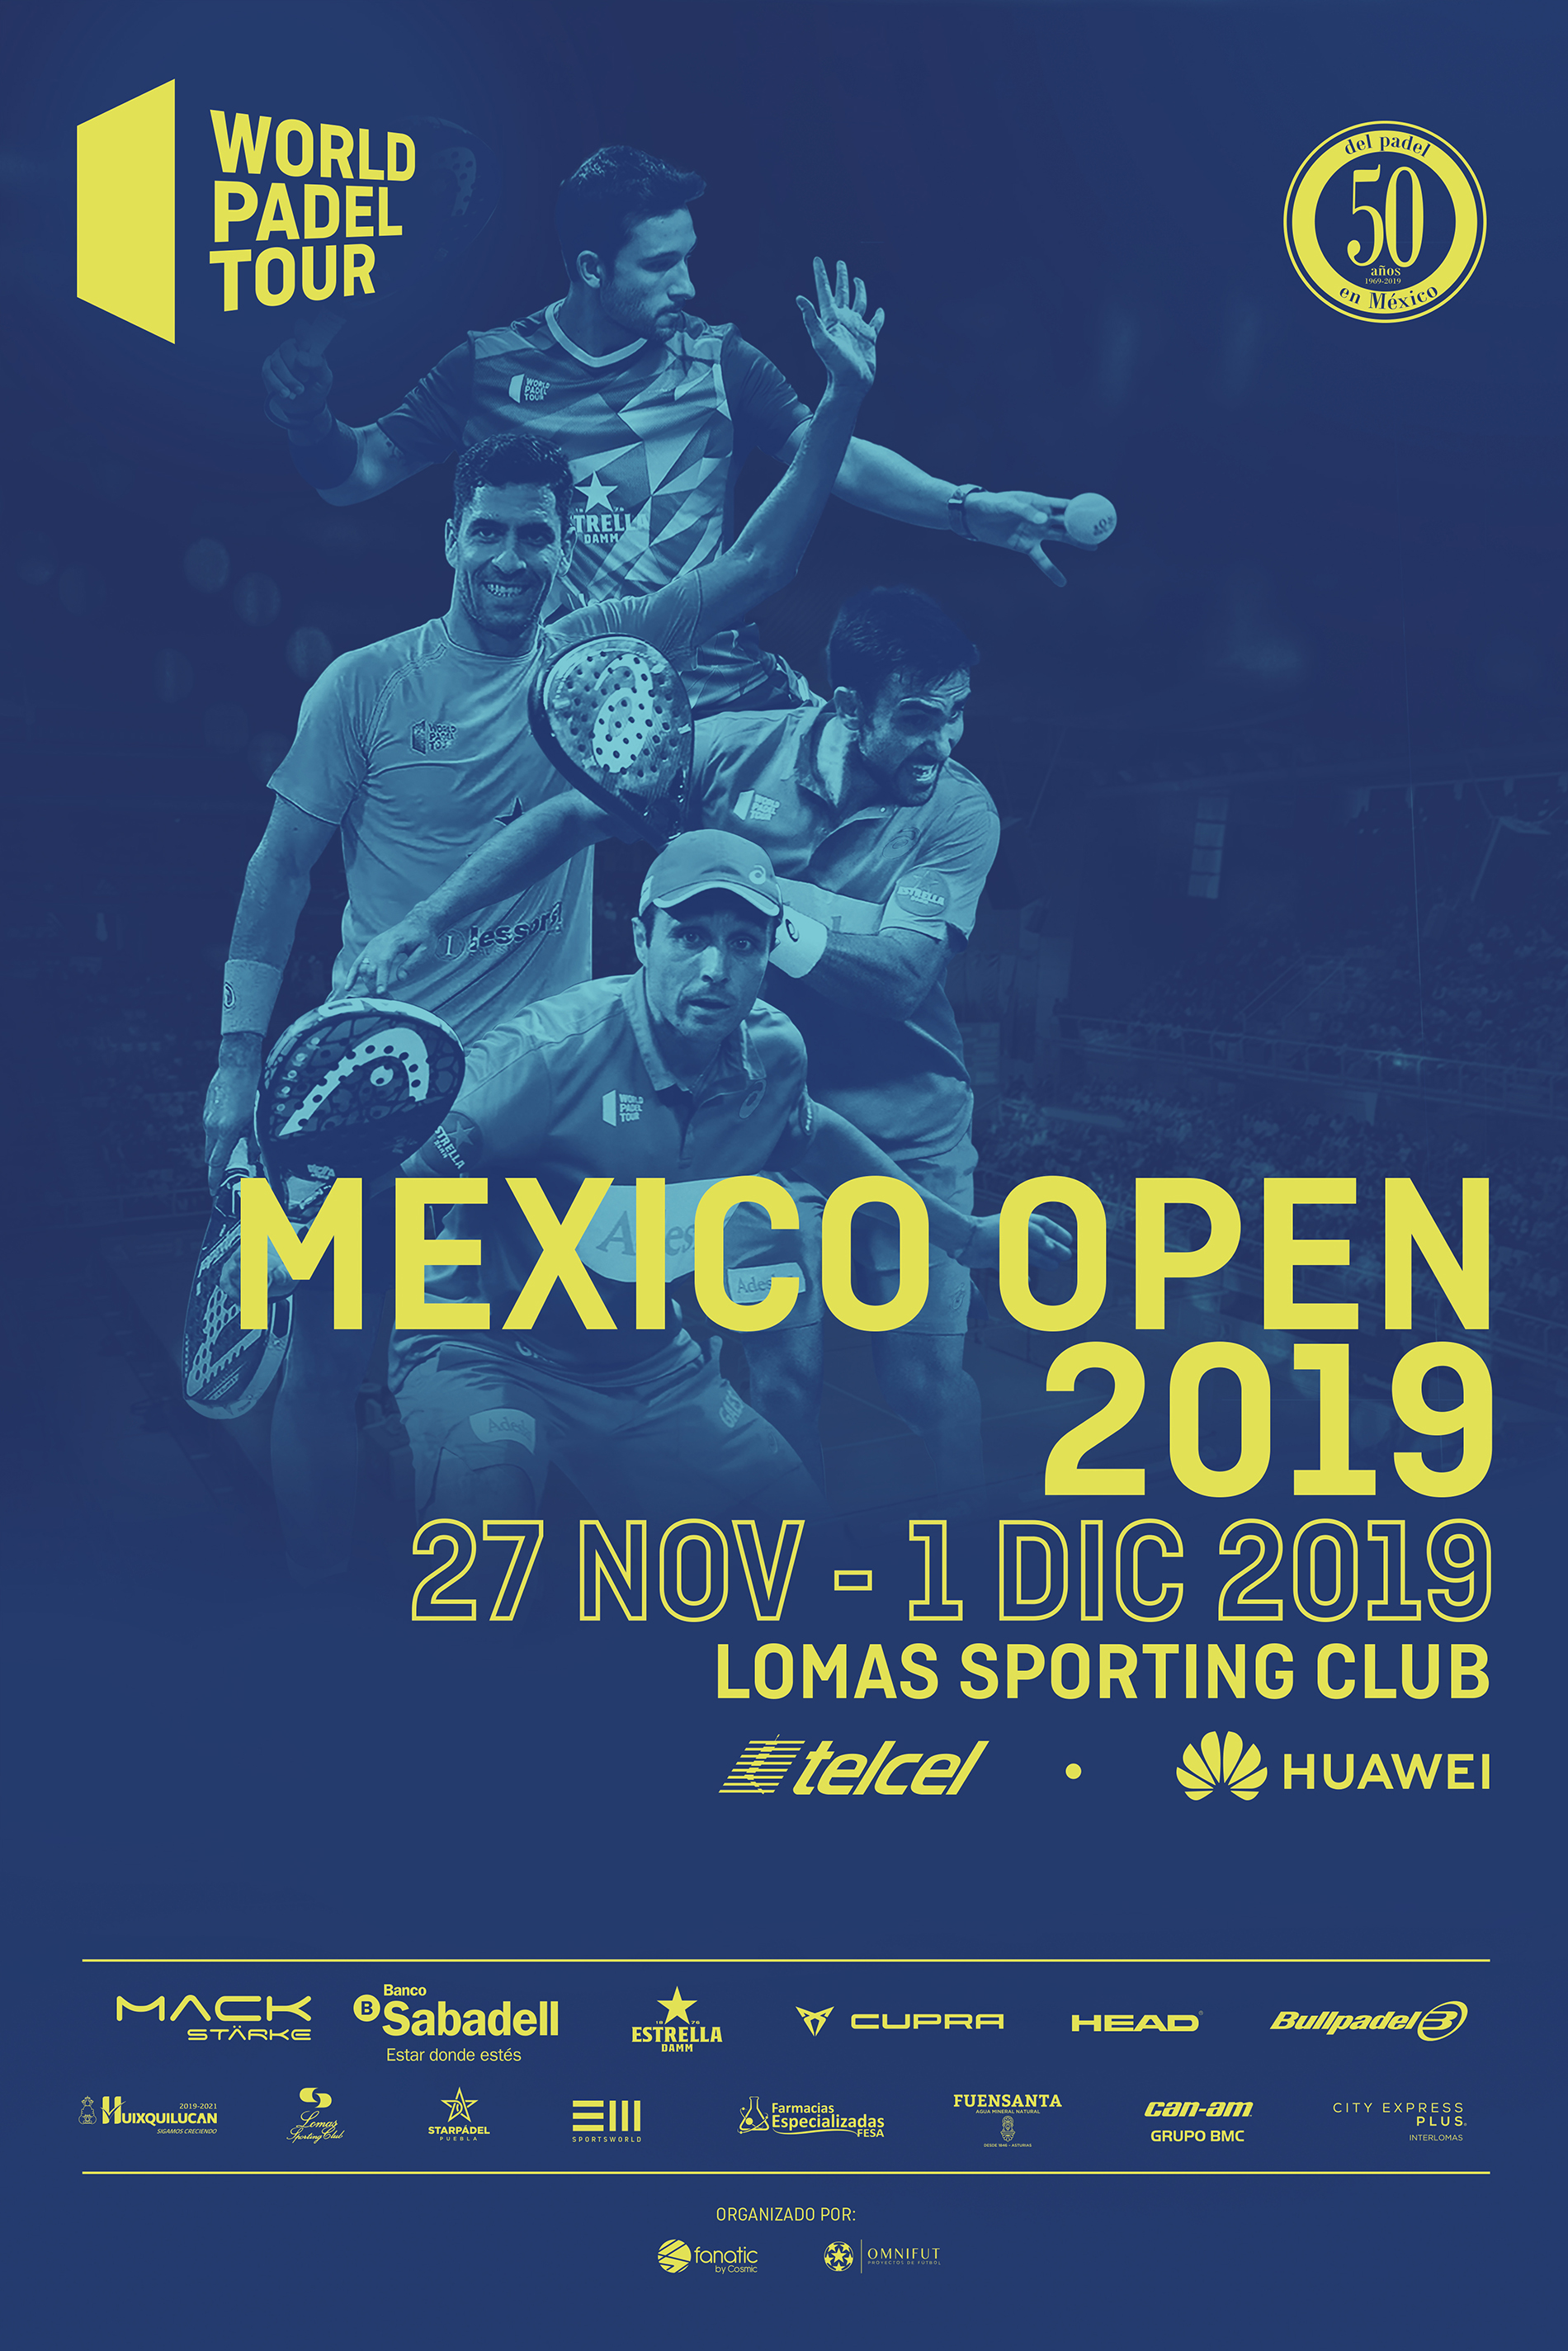 Mexico Open 2019